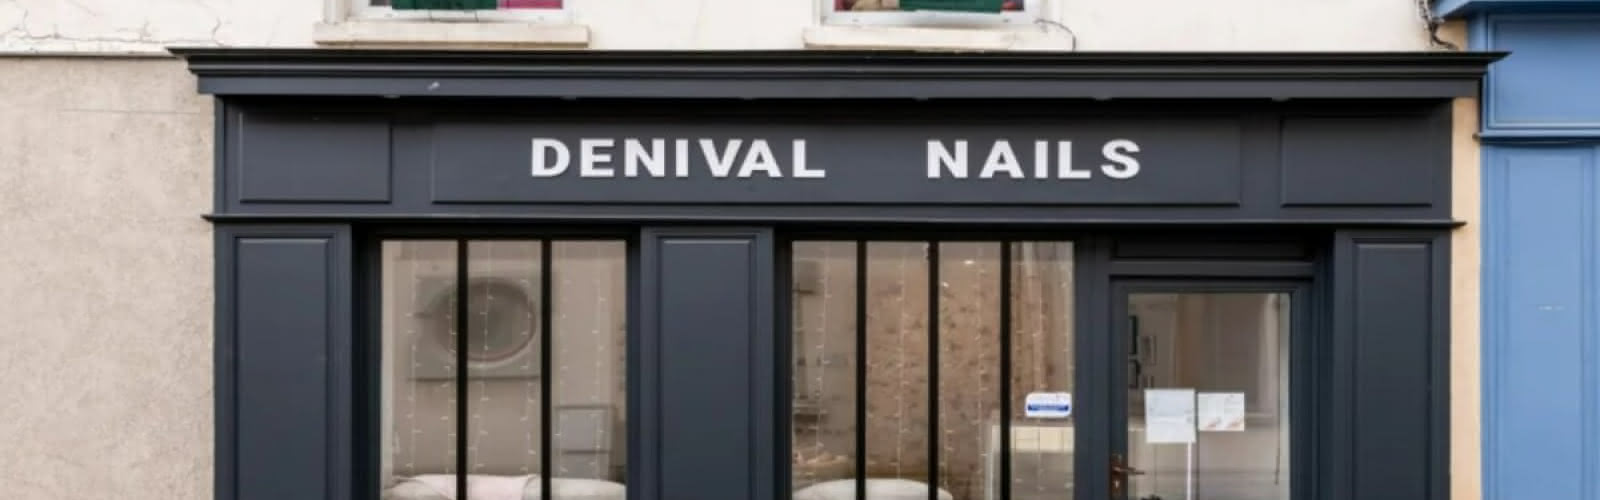 Denival Nails